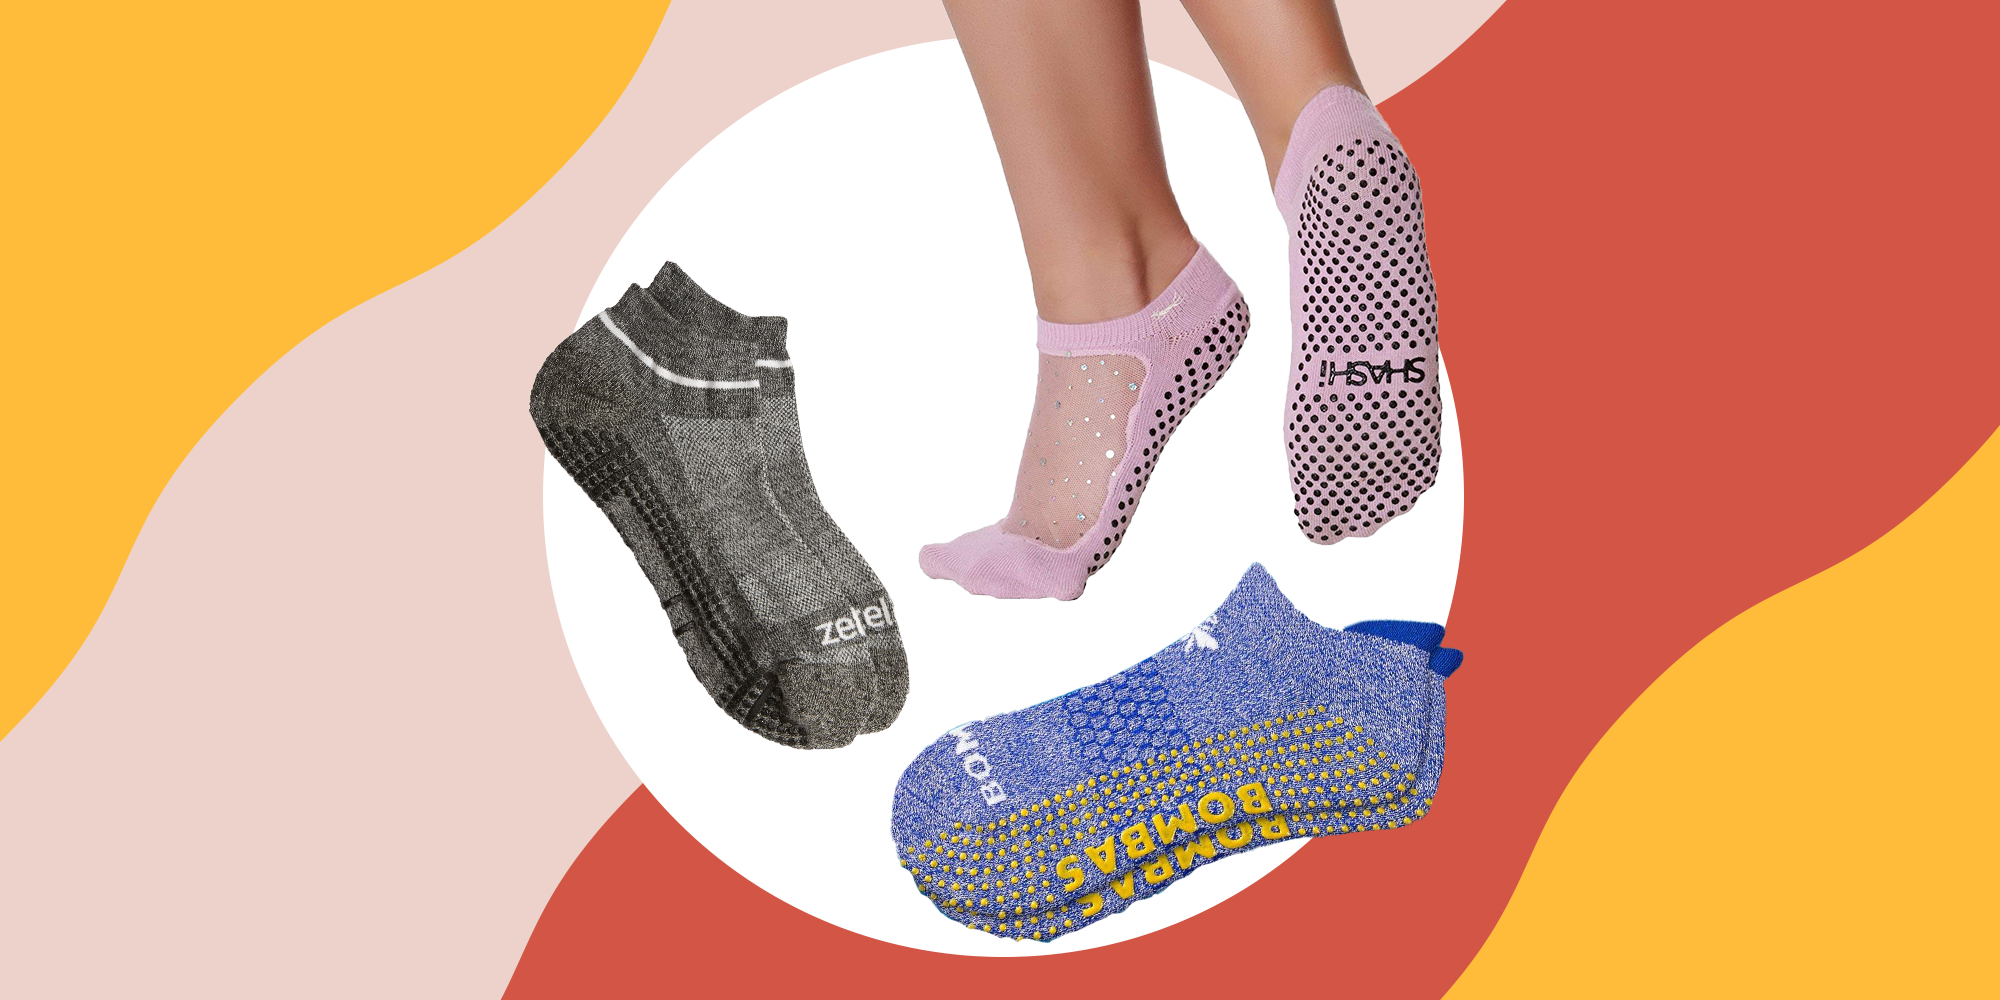 Barre Summeishop Star Glitter Mesh Non-Slip Sock,Yoga Socks for Women with Grips Ergonomic Cool-Comfort Socks Non-Slip Five Toe Socks for Pilates 